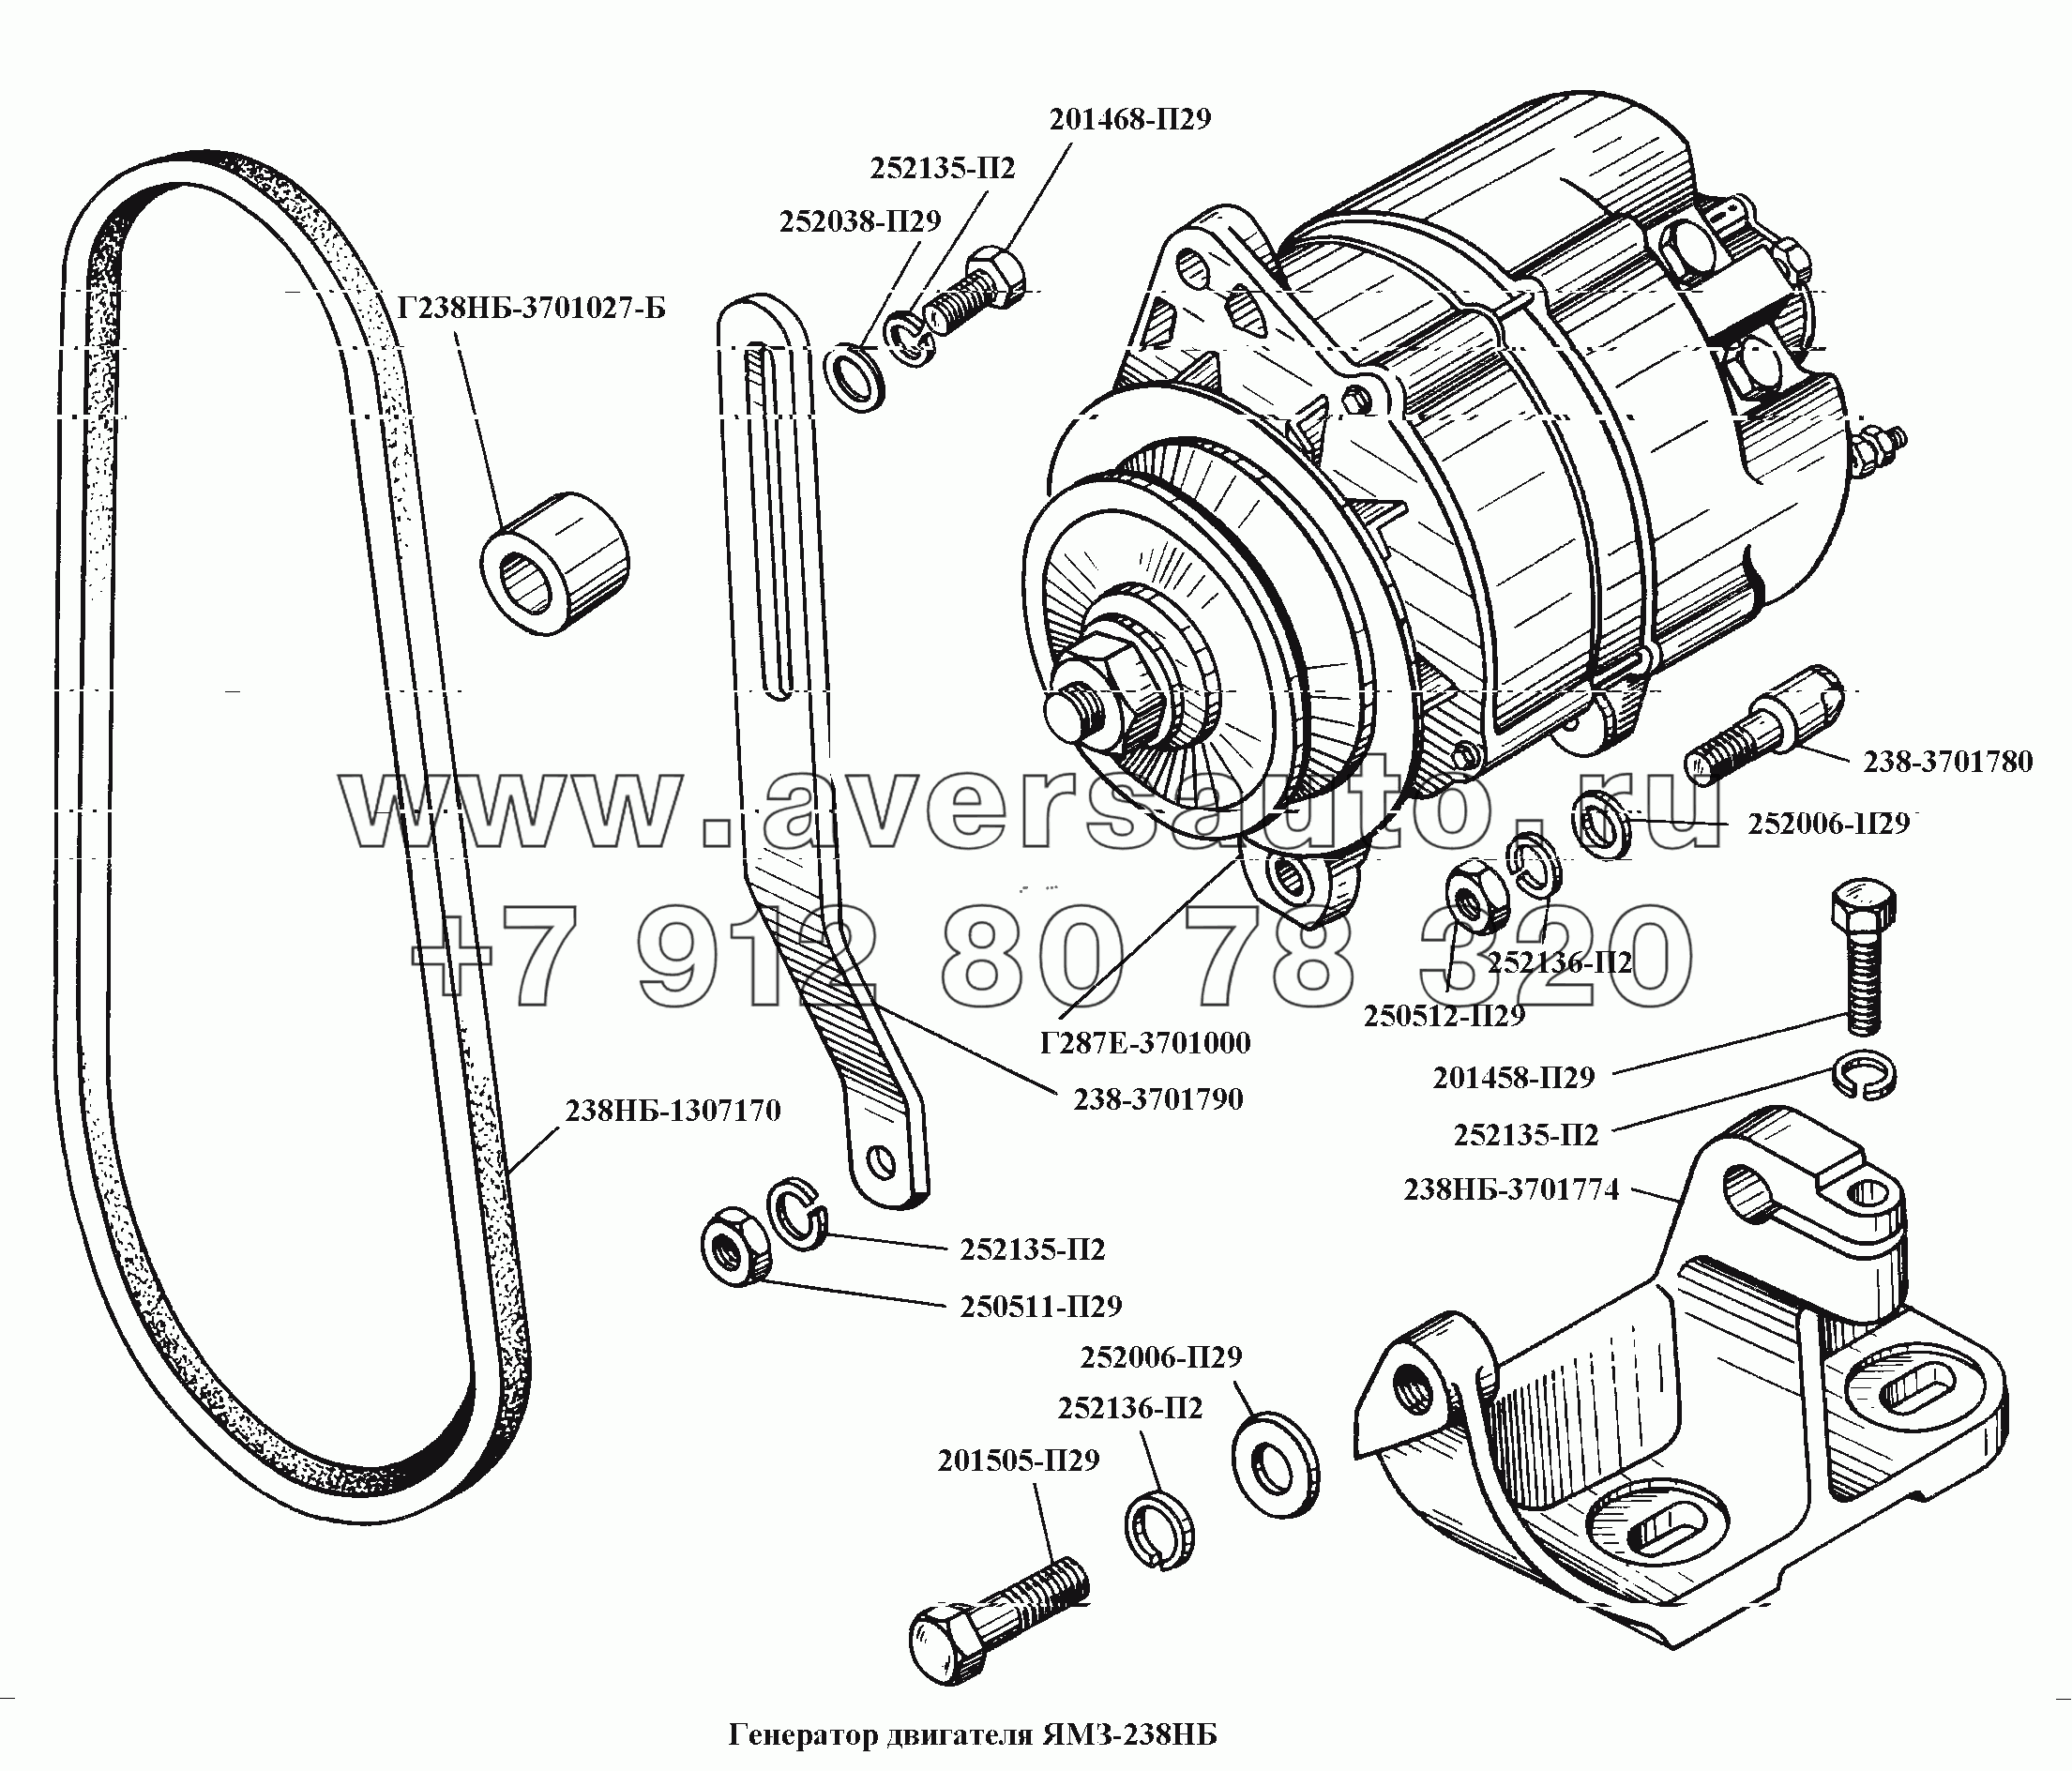 Генератор двигателя ЯМЗ-238НБ